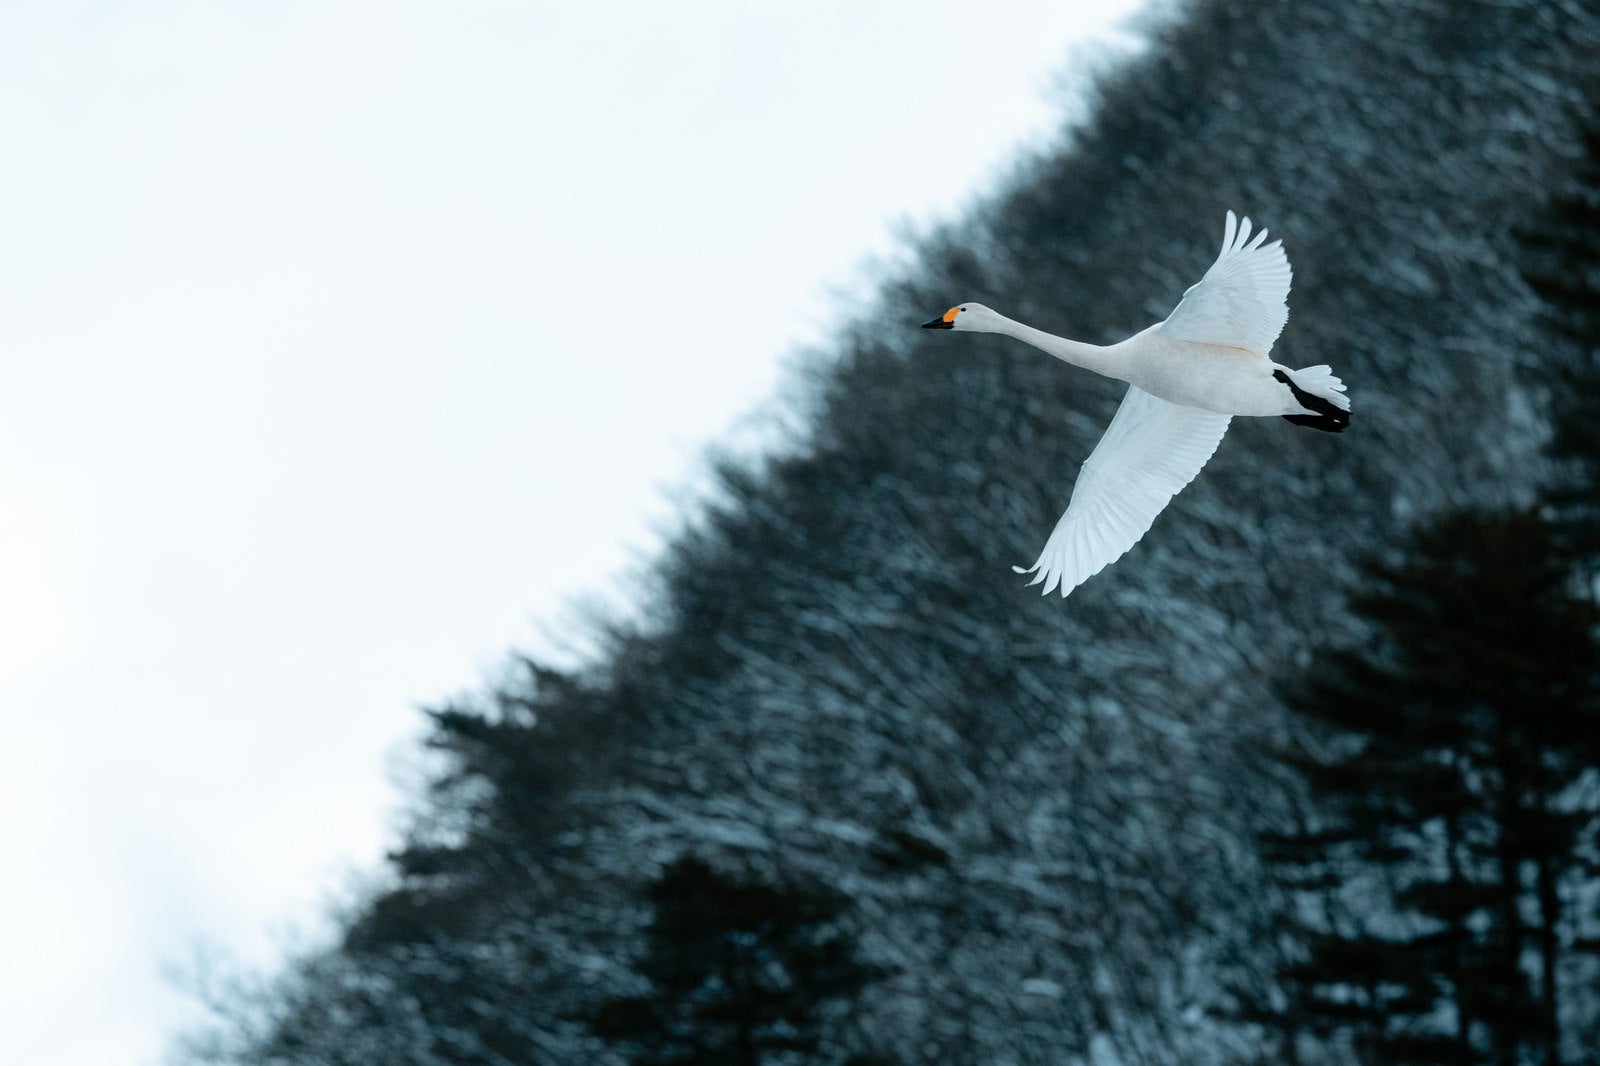 「猪苗代湖の空を舞う白鳥」の写真